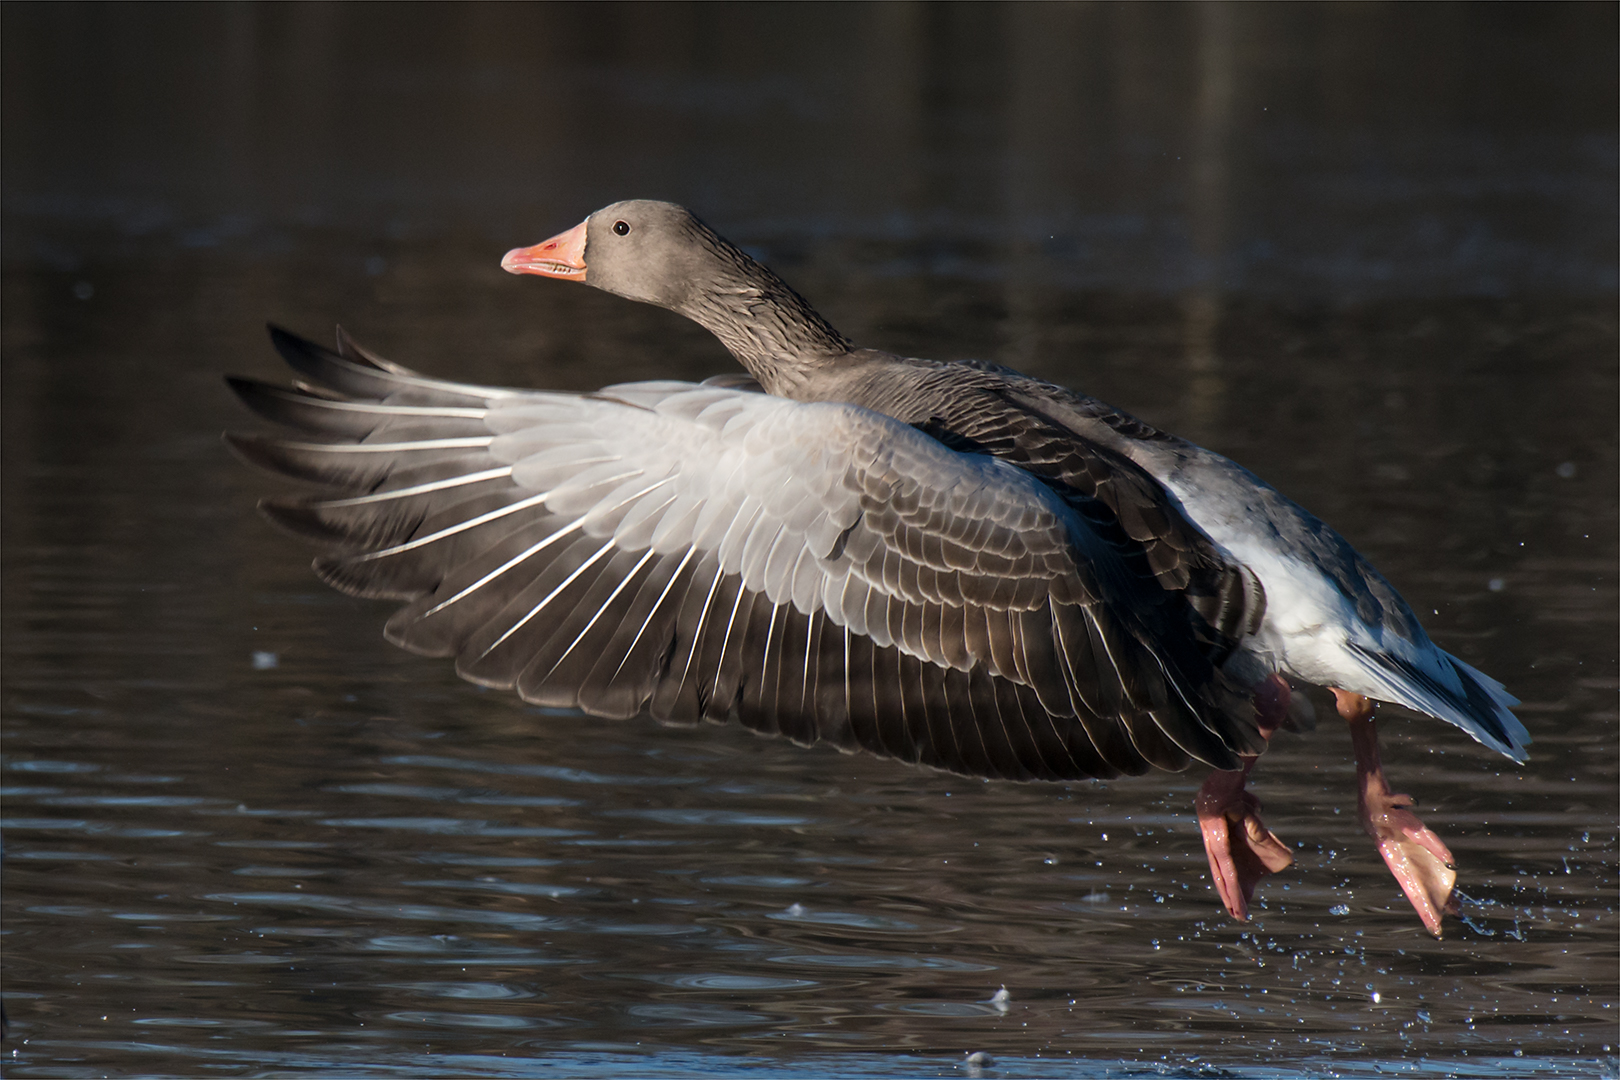 Wild goose in flight...